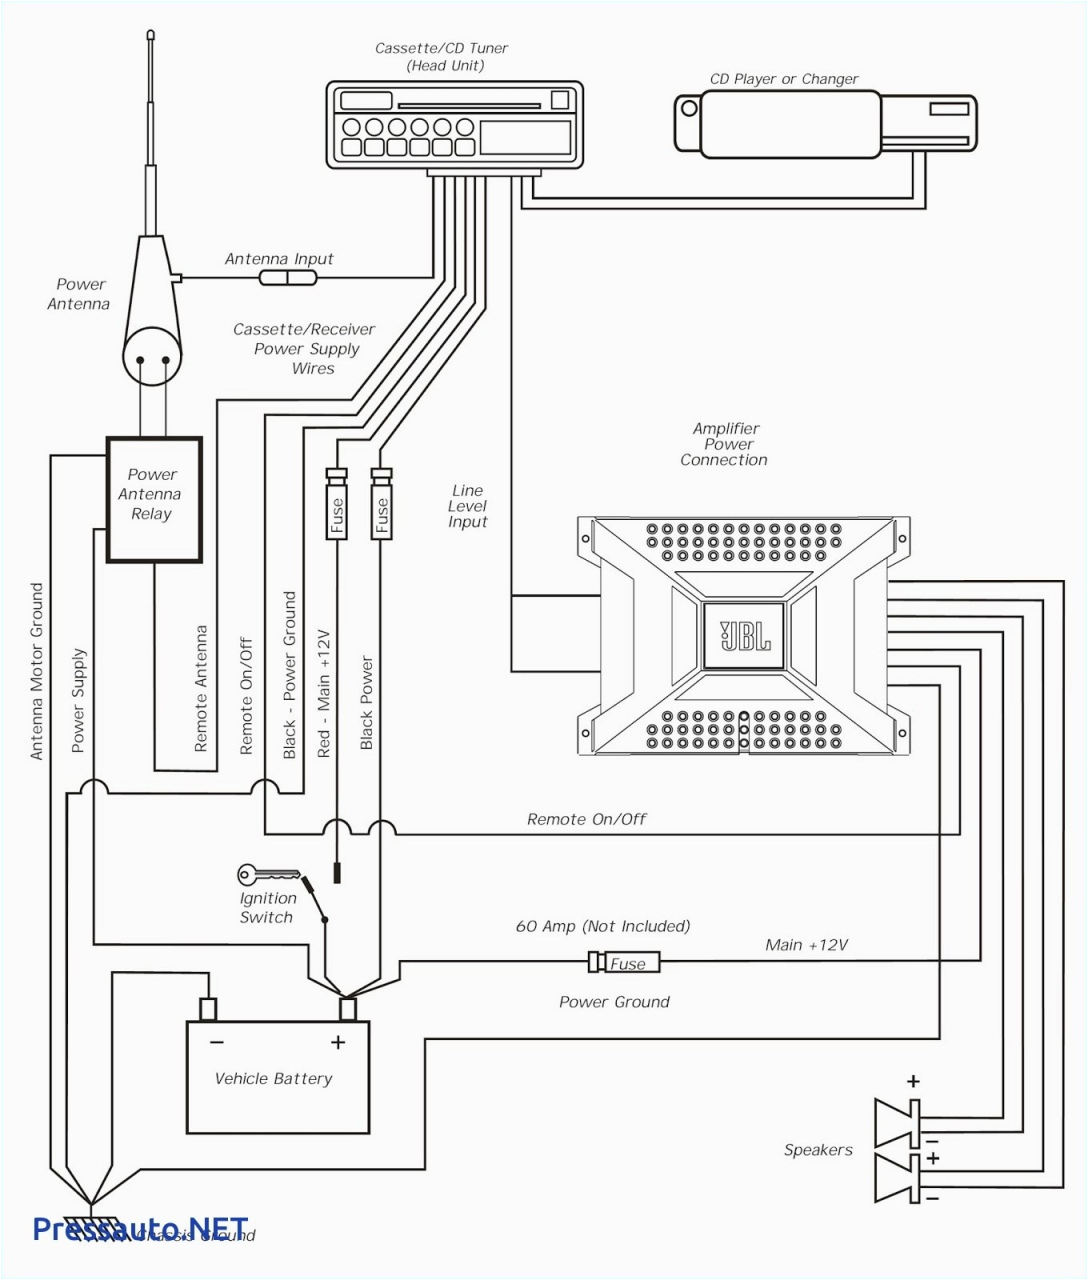 Wiring Diagram for sony Xplod 52wx4 sony Car Audio Amplifier Wiring Diagrams Wiring Diagram Centre